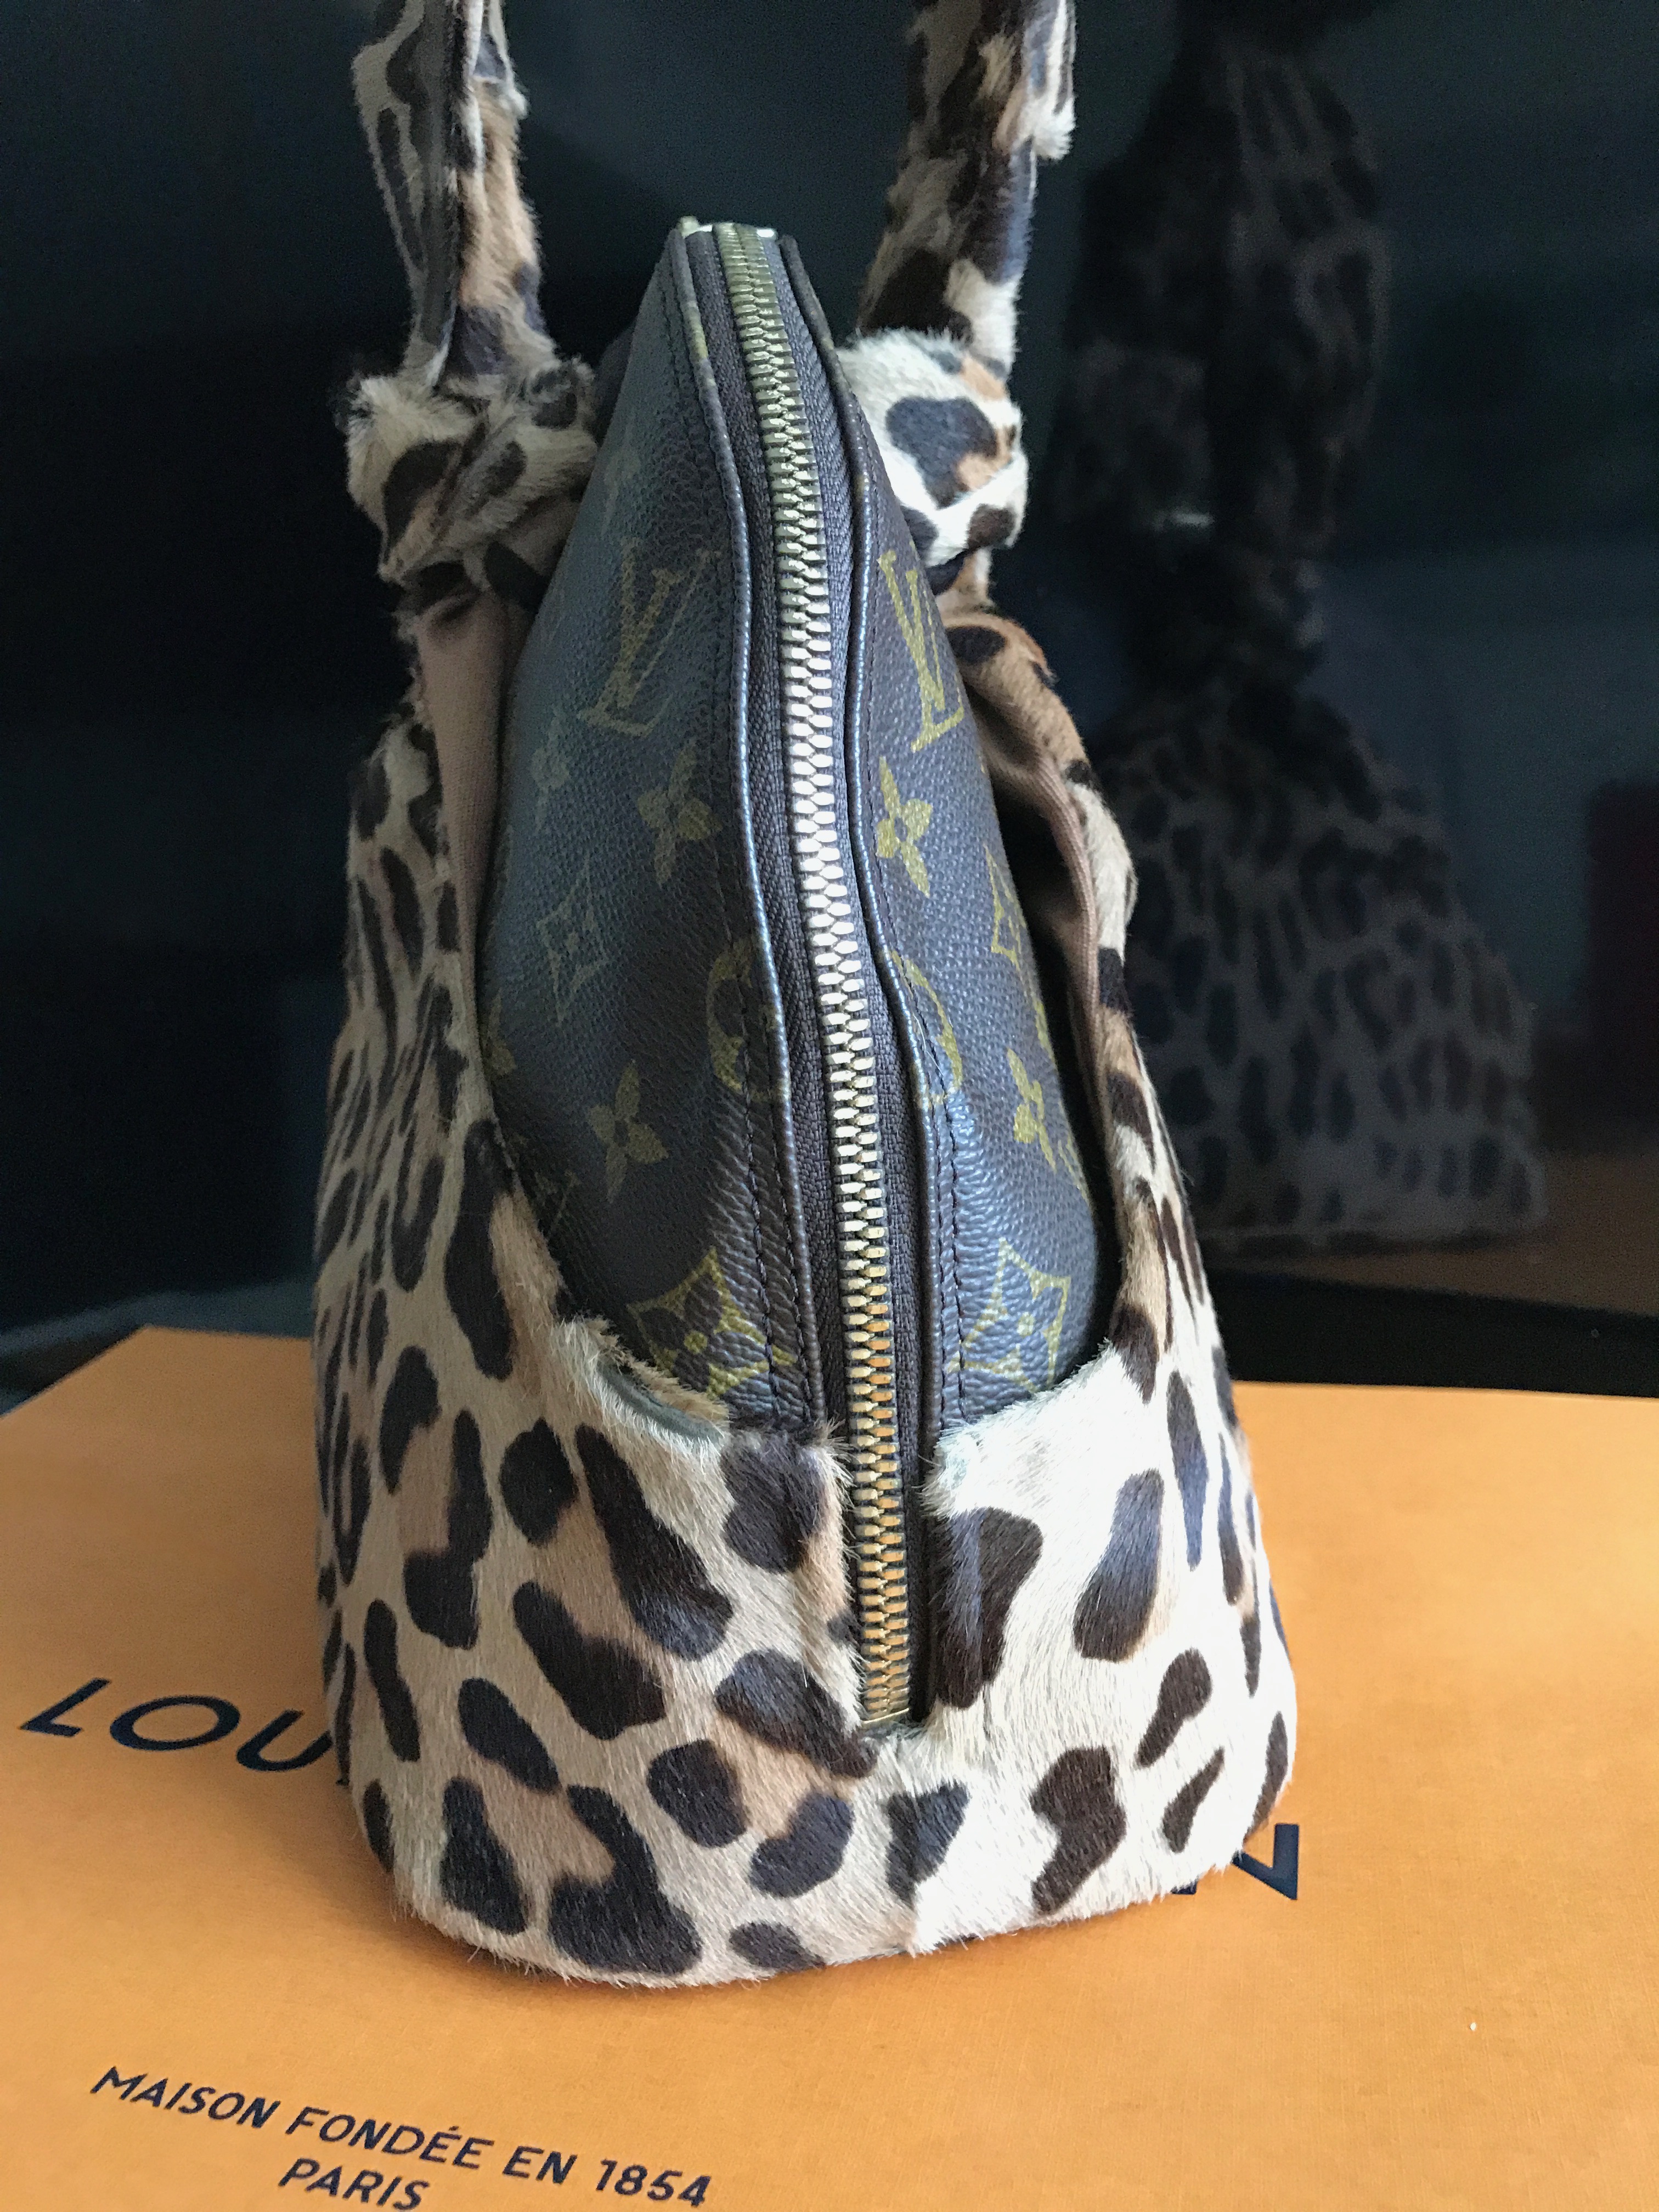 Louis Vuitton Limited Edition Leopard Print Centenaire Alma bag by